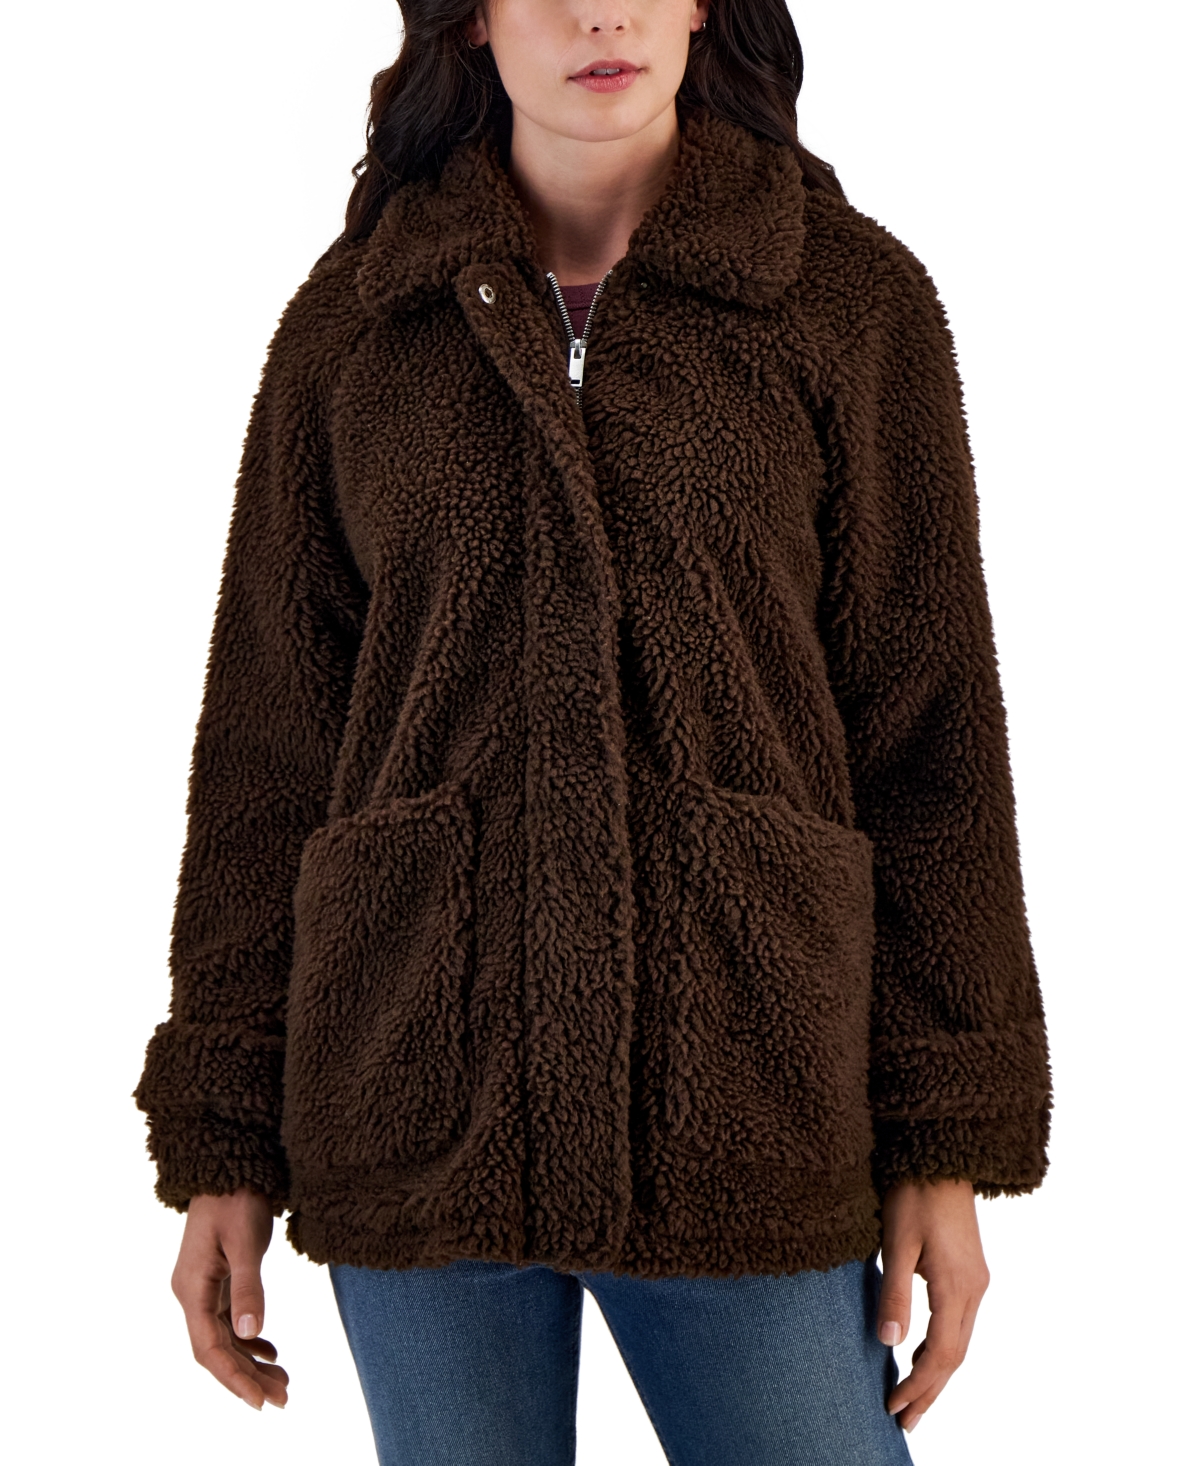 Coffeeshop Juniors' Collared Zip-front Fleece Coat In Chocolate